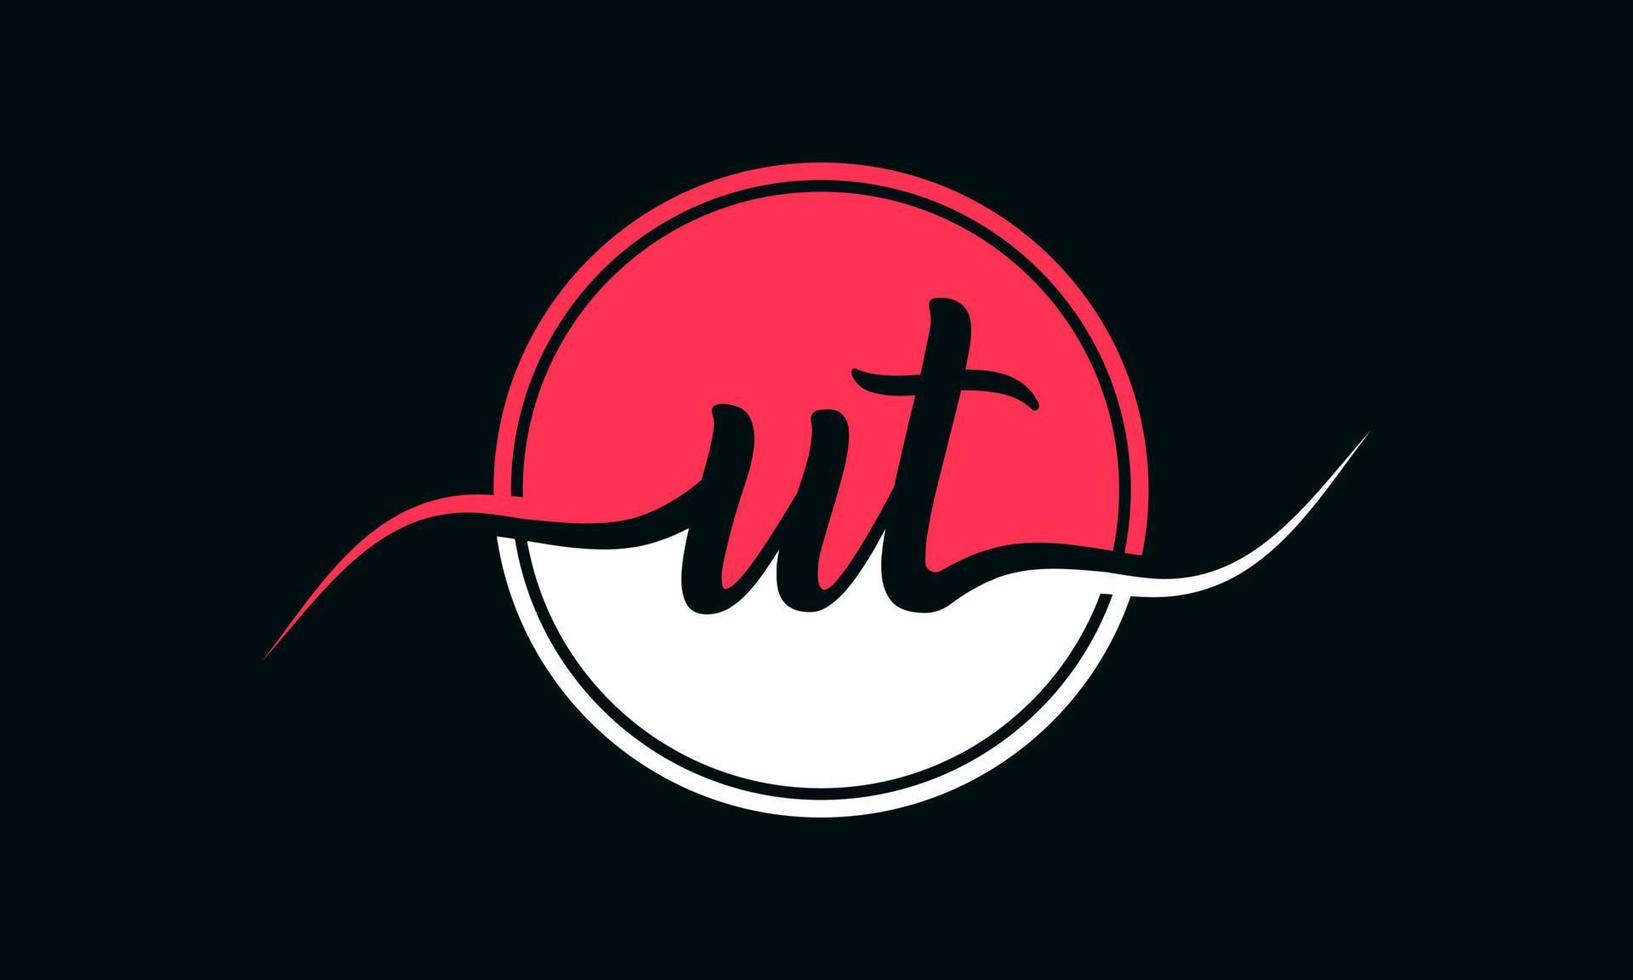 logo initial de la lettre ut avec cercle intérieur de couleur blanche et rose. vecteur professionnel.